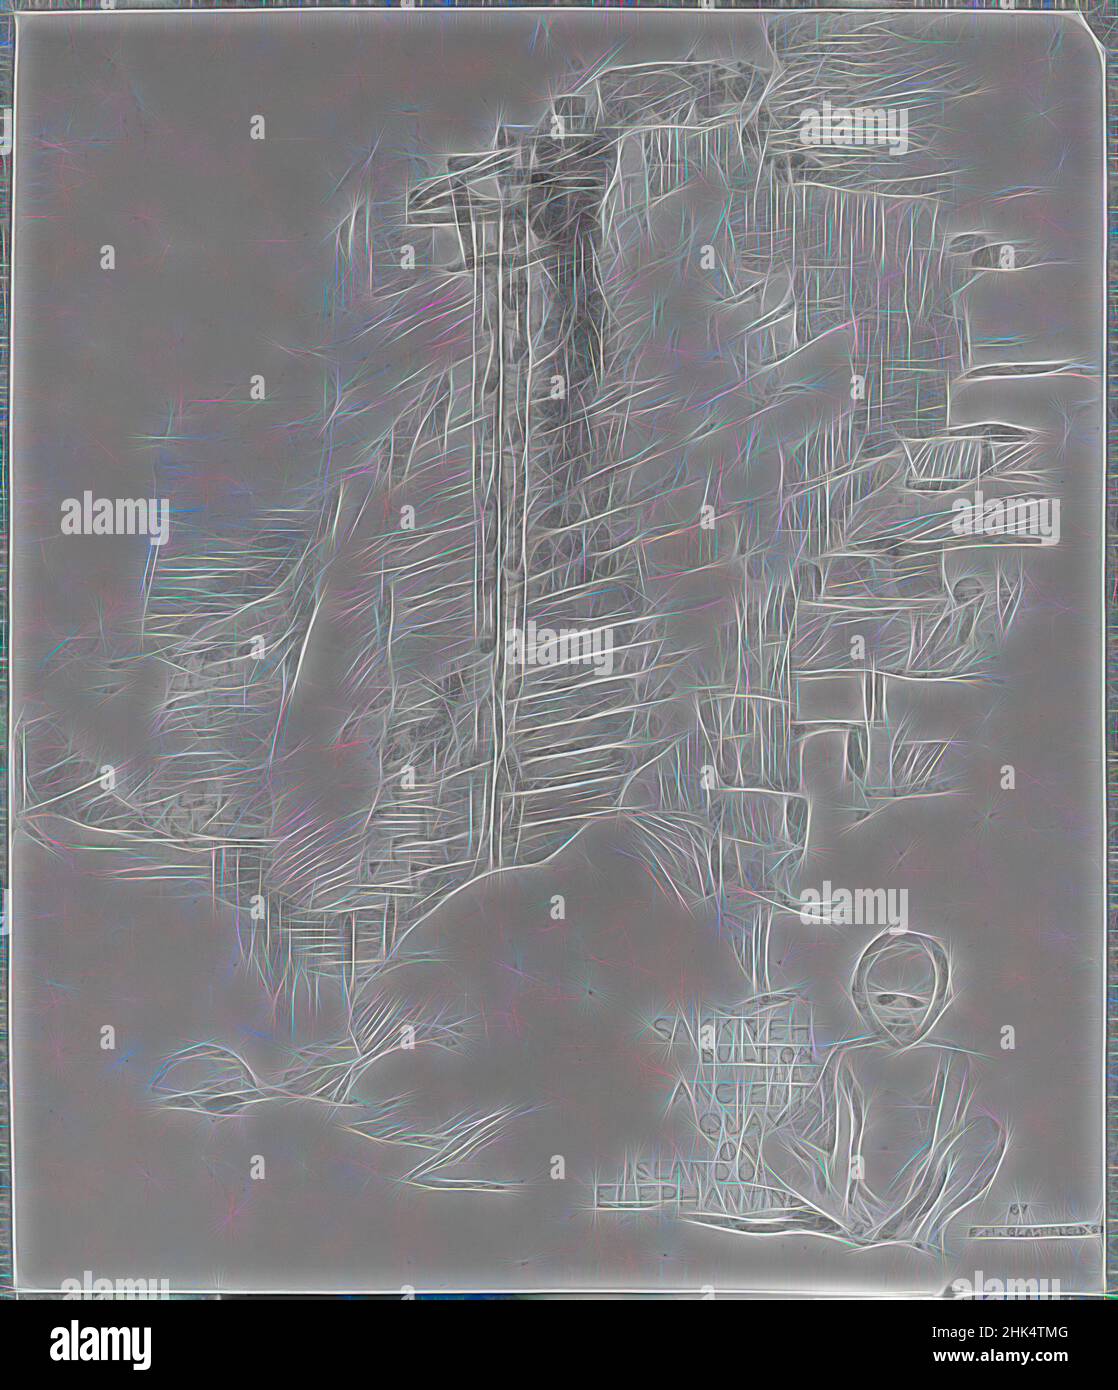 Inspiriert von Sakia am Nilometer, Island of Elephantine, Edwin Howland Blashfield, Amerikaner, 1848-1936, Graphit auf Papier auf grauem Karton, 1887, Blatt: 11 3/4 x 10 1/16 Zoll, 29,8 x 25,6 cm, neu erfunden von Artotop. Klassische Kunst neu erfunden mit einem modernen Twist. Design von warmen fröhlichen Leuchten der Helligkeit und Lichtstrahl Strahlkraft. Fotografie inspiriert von Surrealismus und Futurismus, umarmt dynamische Energie der modernen Technologie, Bewegung, Geschwindigkeit und Kultur zu revolutionieren Stockfoto